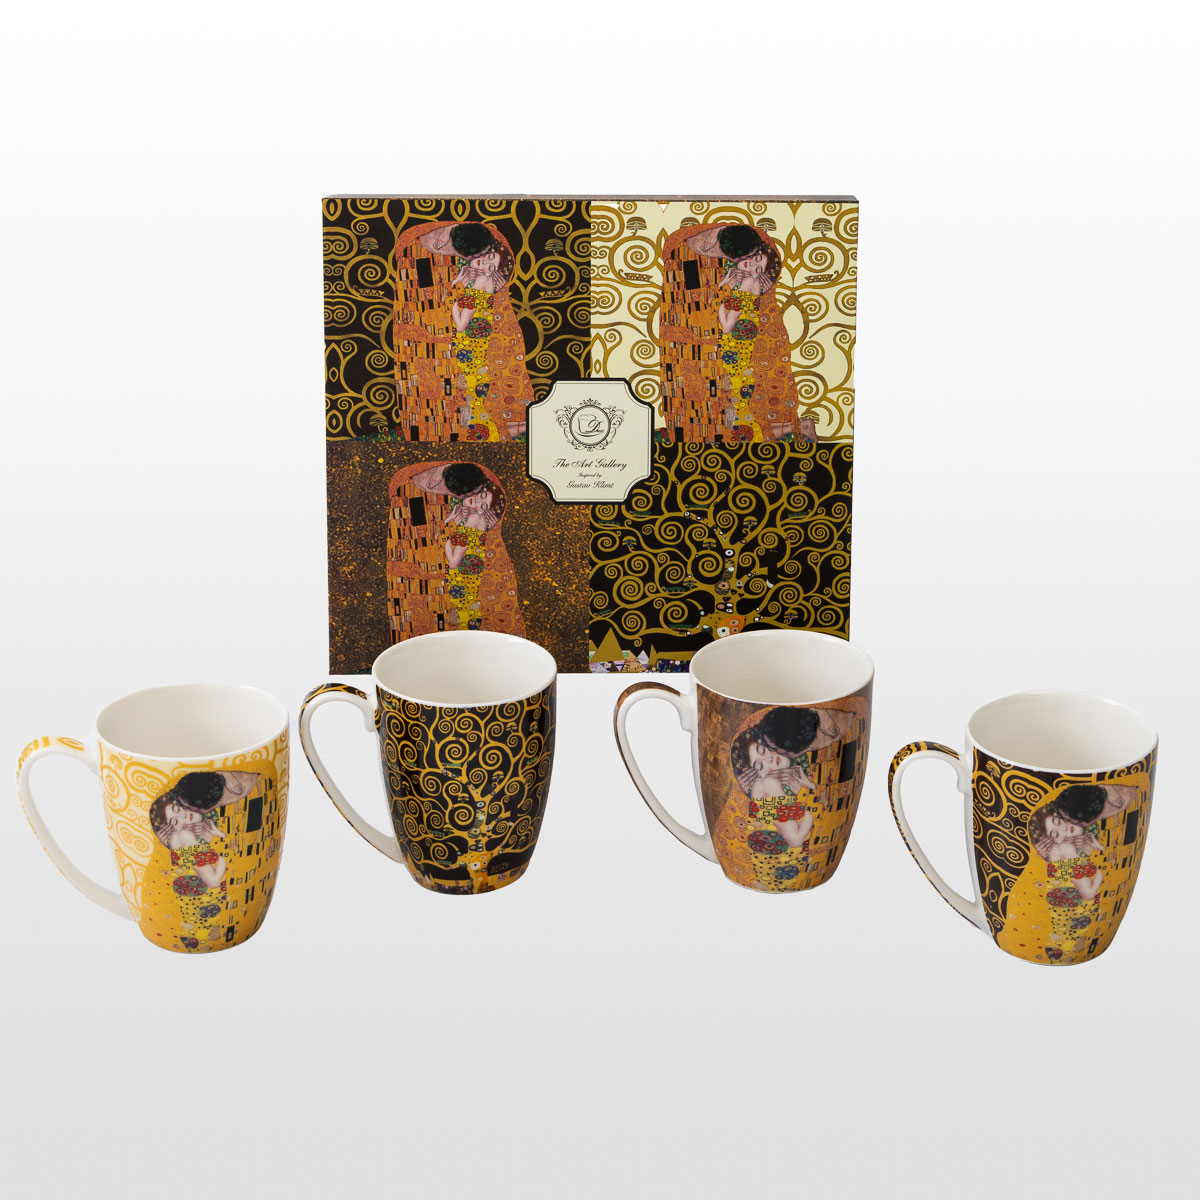 4 tazas Gustav Klimt (en una caja de regalo), detalle n°1